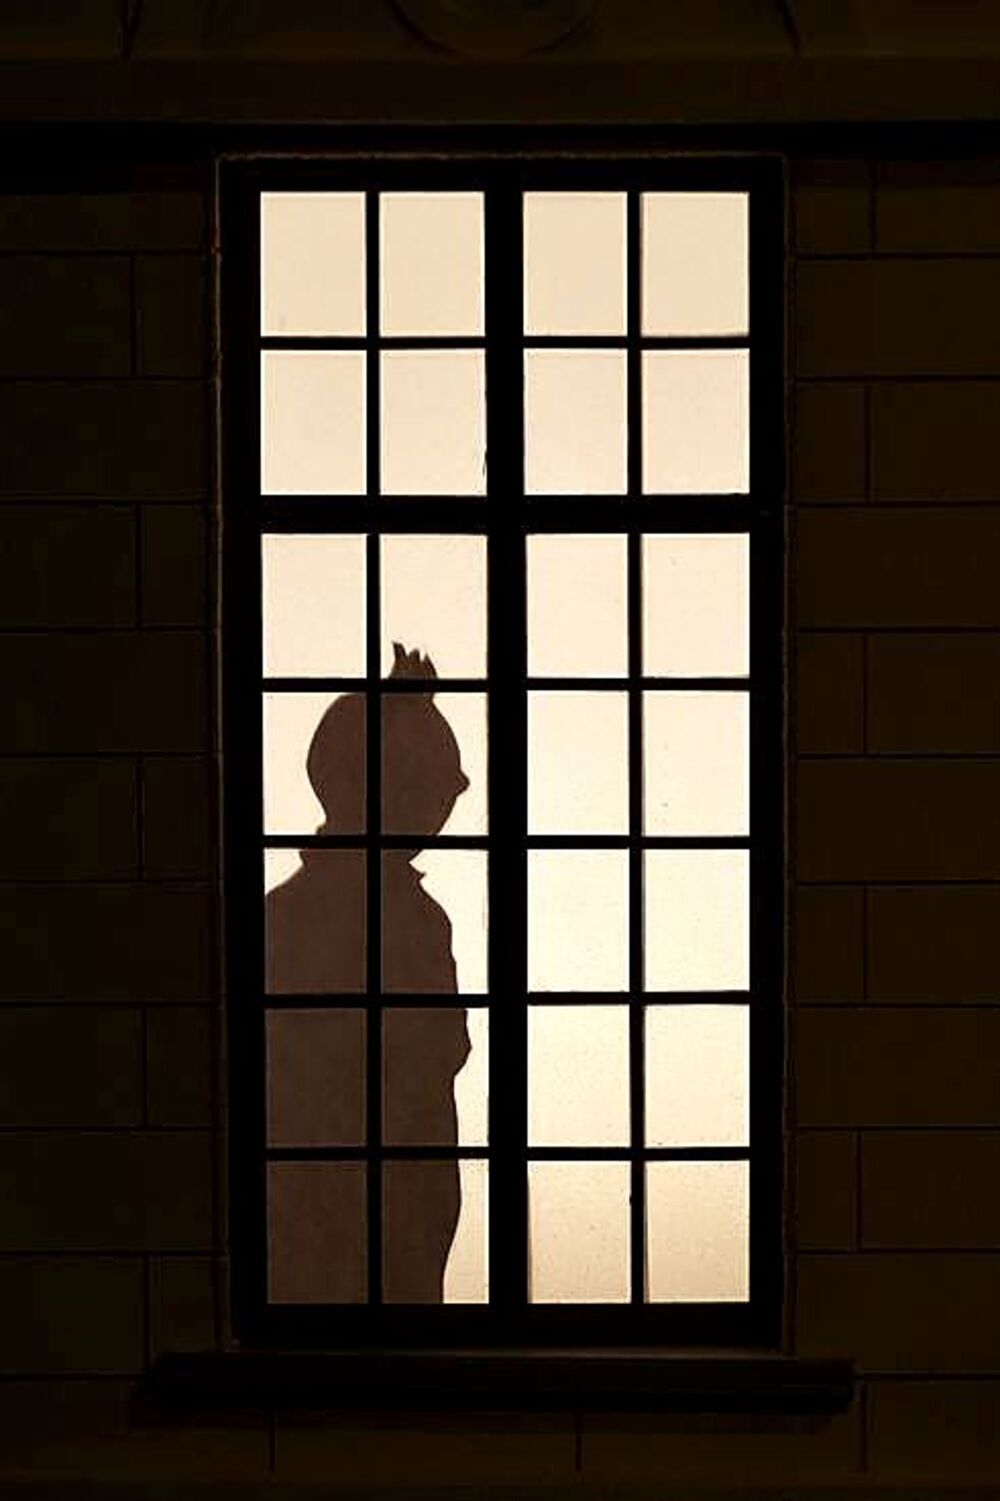 El perfil de Tintín es reconocible a simple vista hasta para quienes no han leído sus viñetas